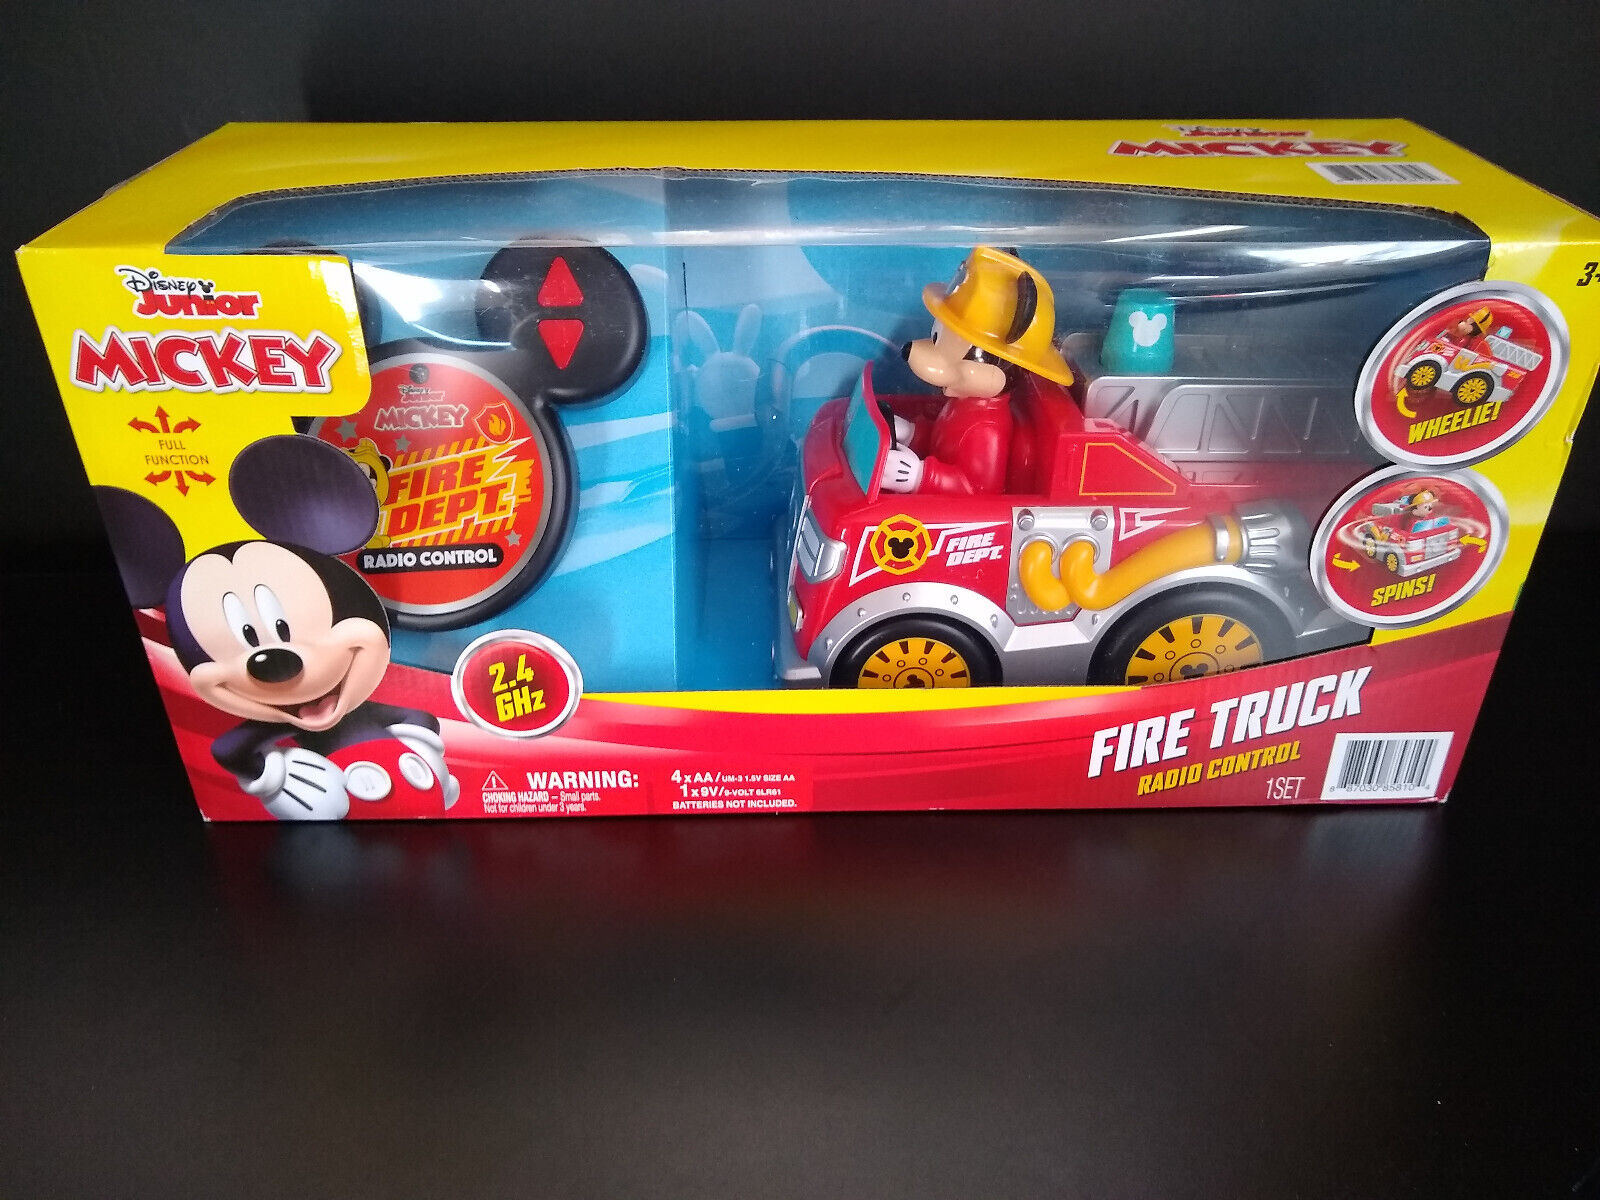 Mickey Mouse * Radio Control Fire Truck * 2.4 GHz * NIB * Disney Junior * Age 3+